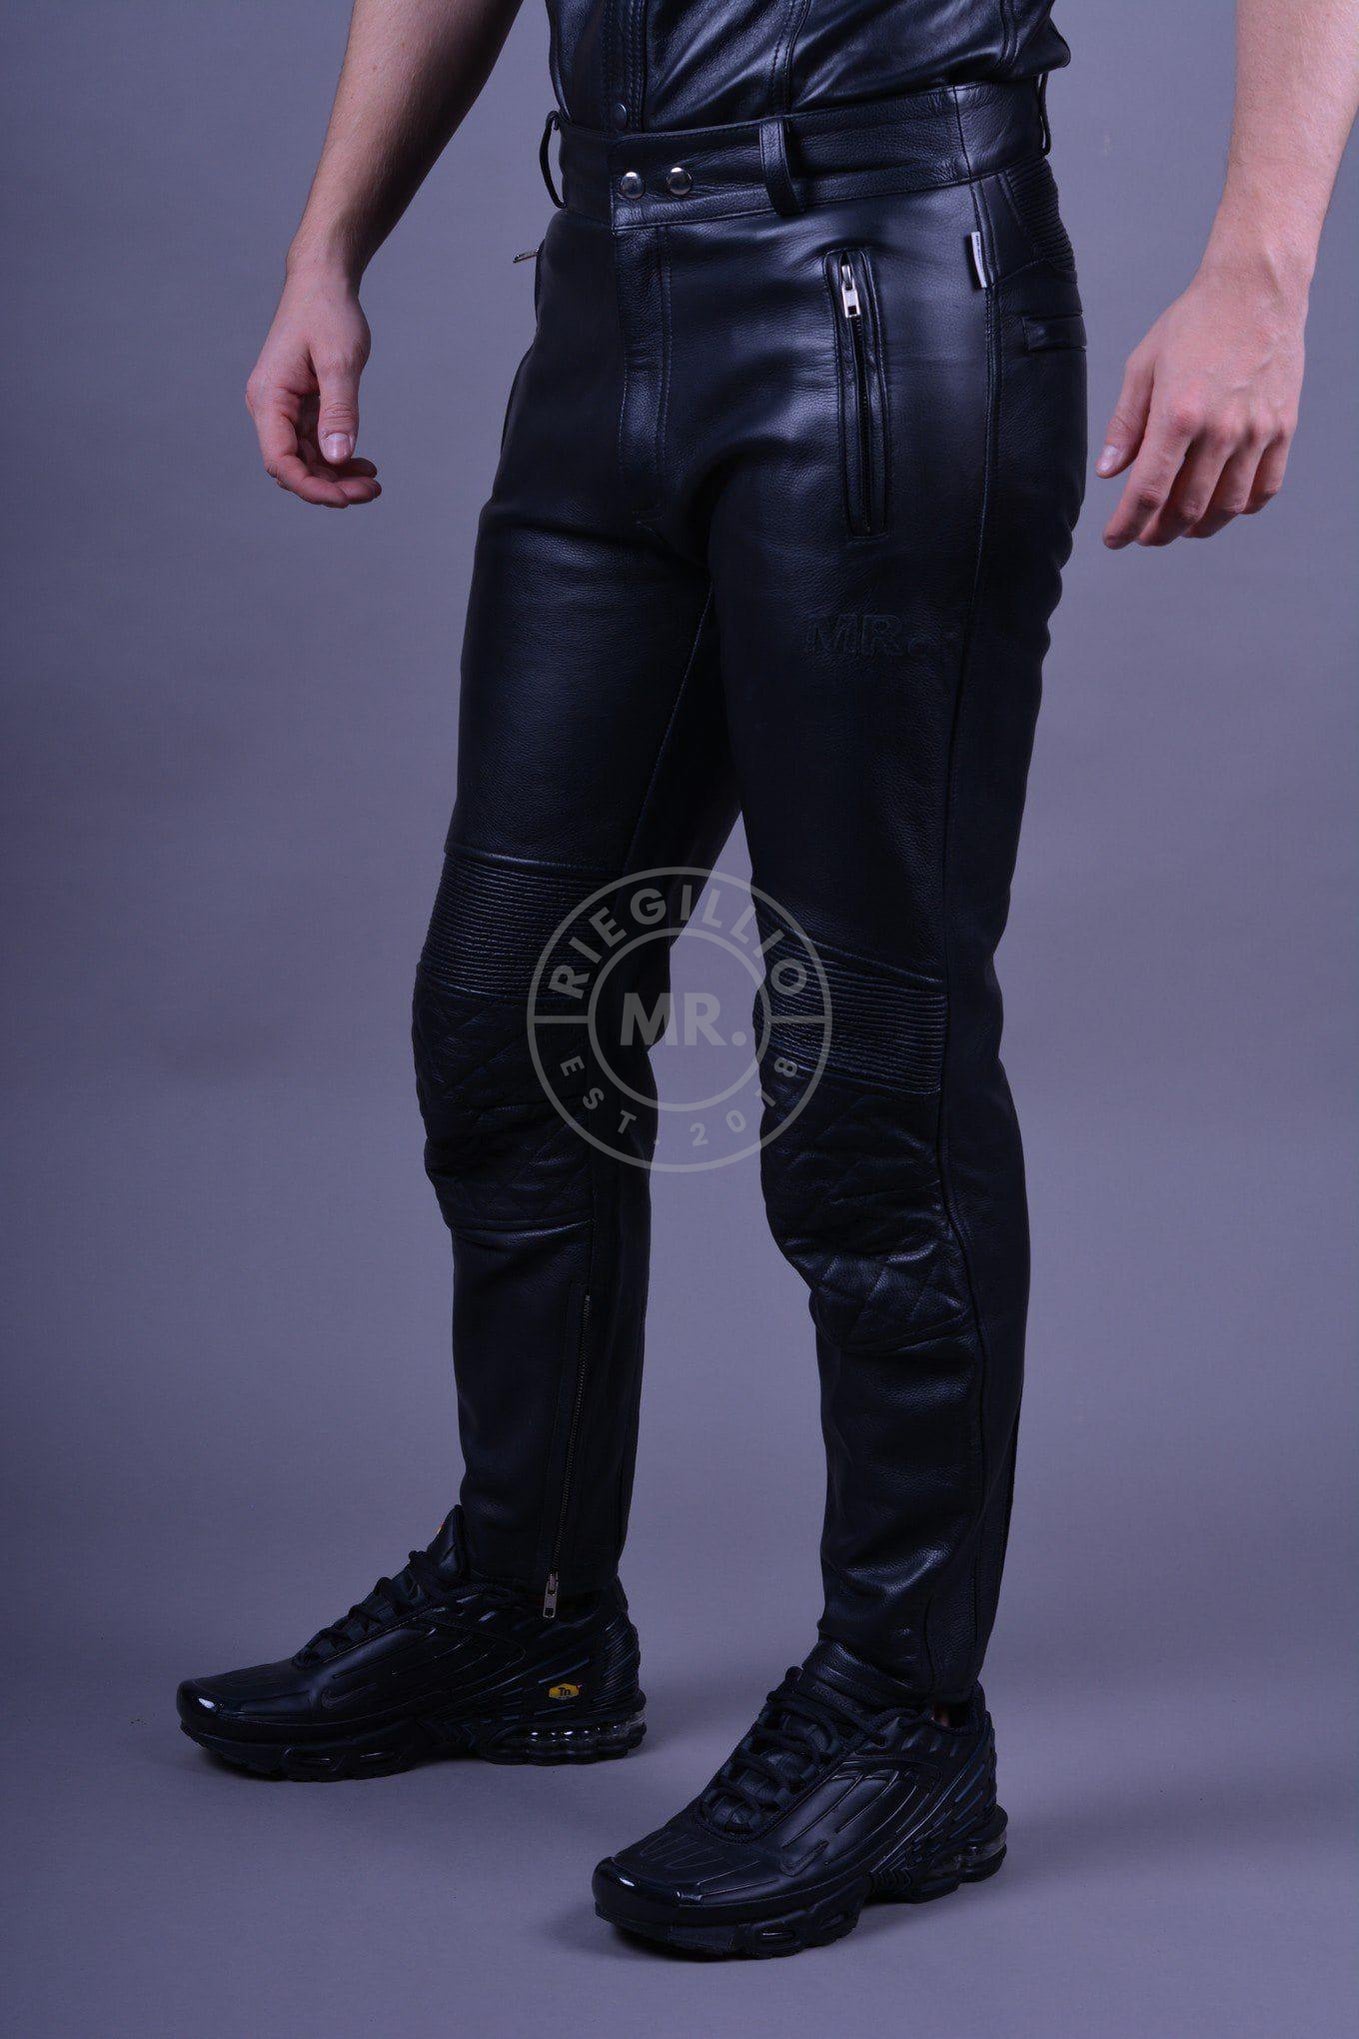 Black Leather Motorbike Pants-at MR. Riegillio